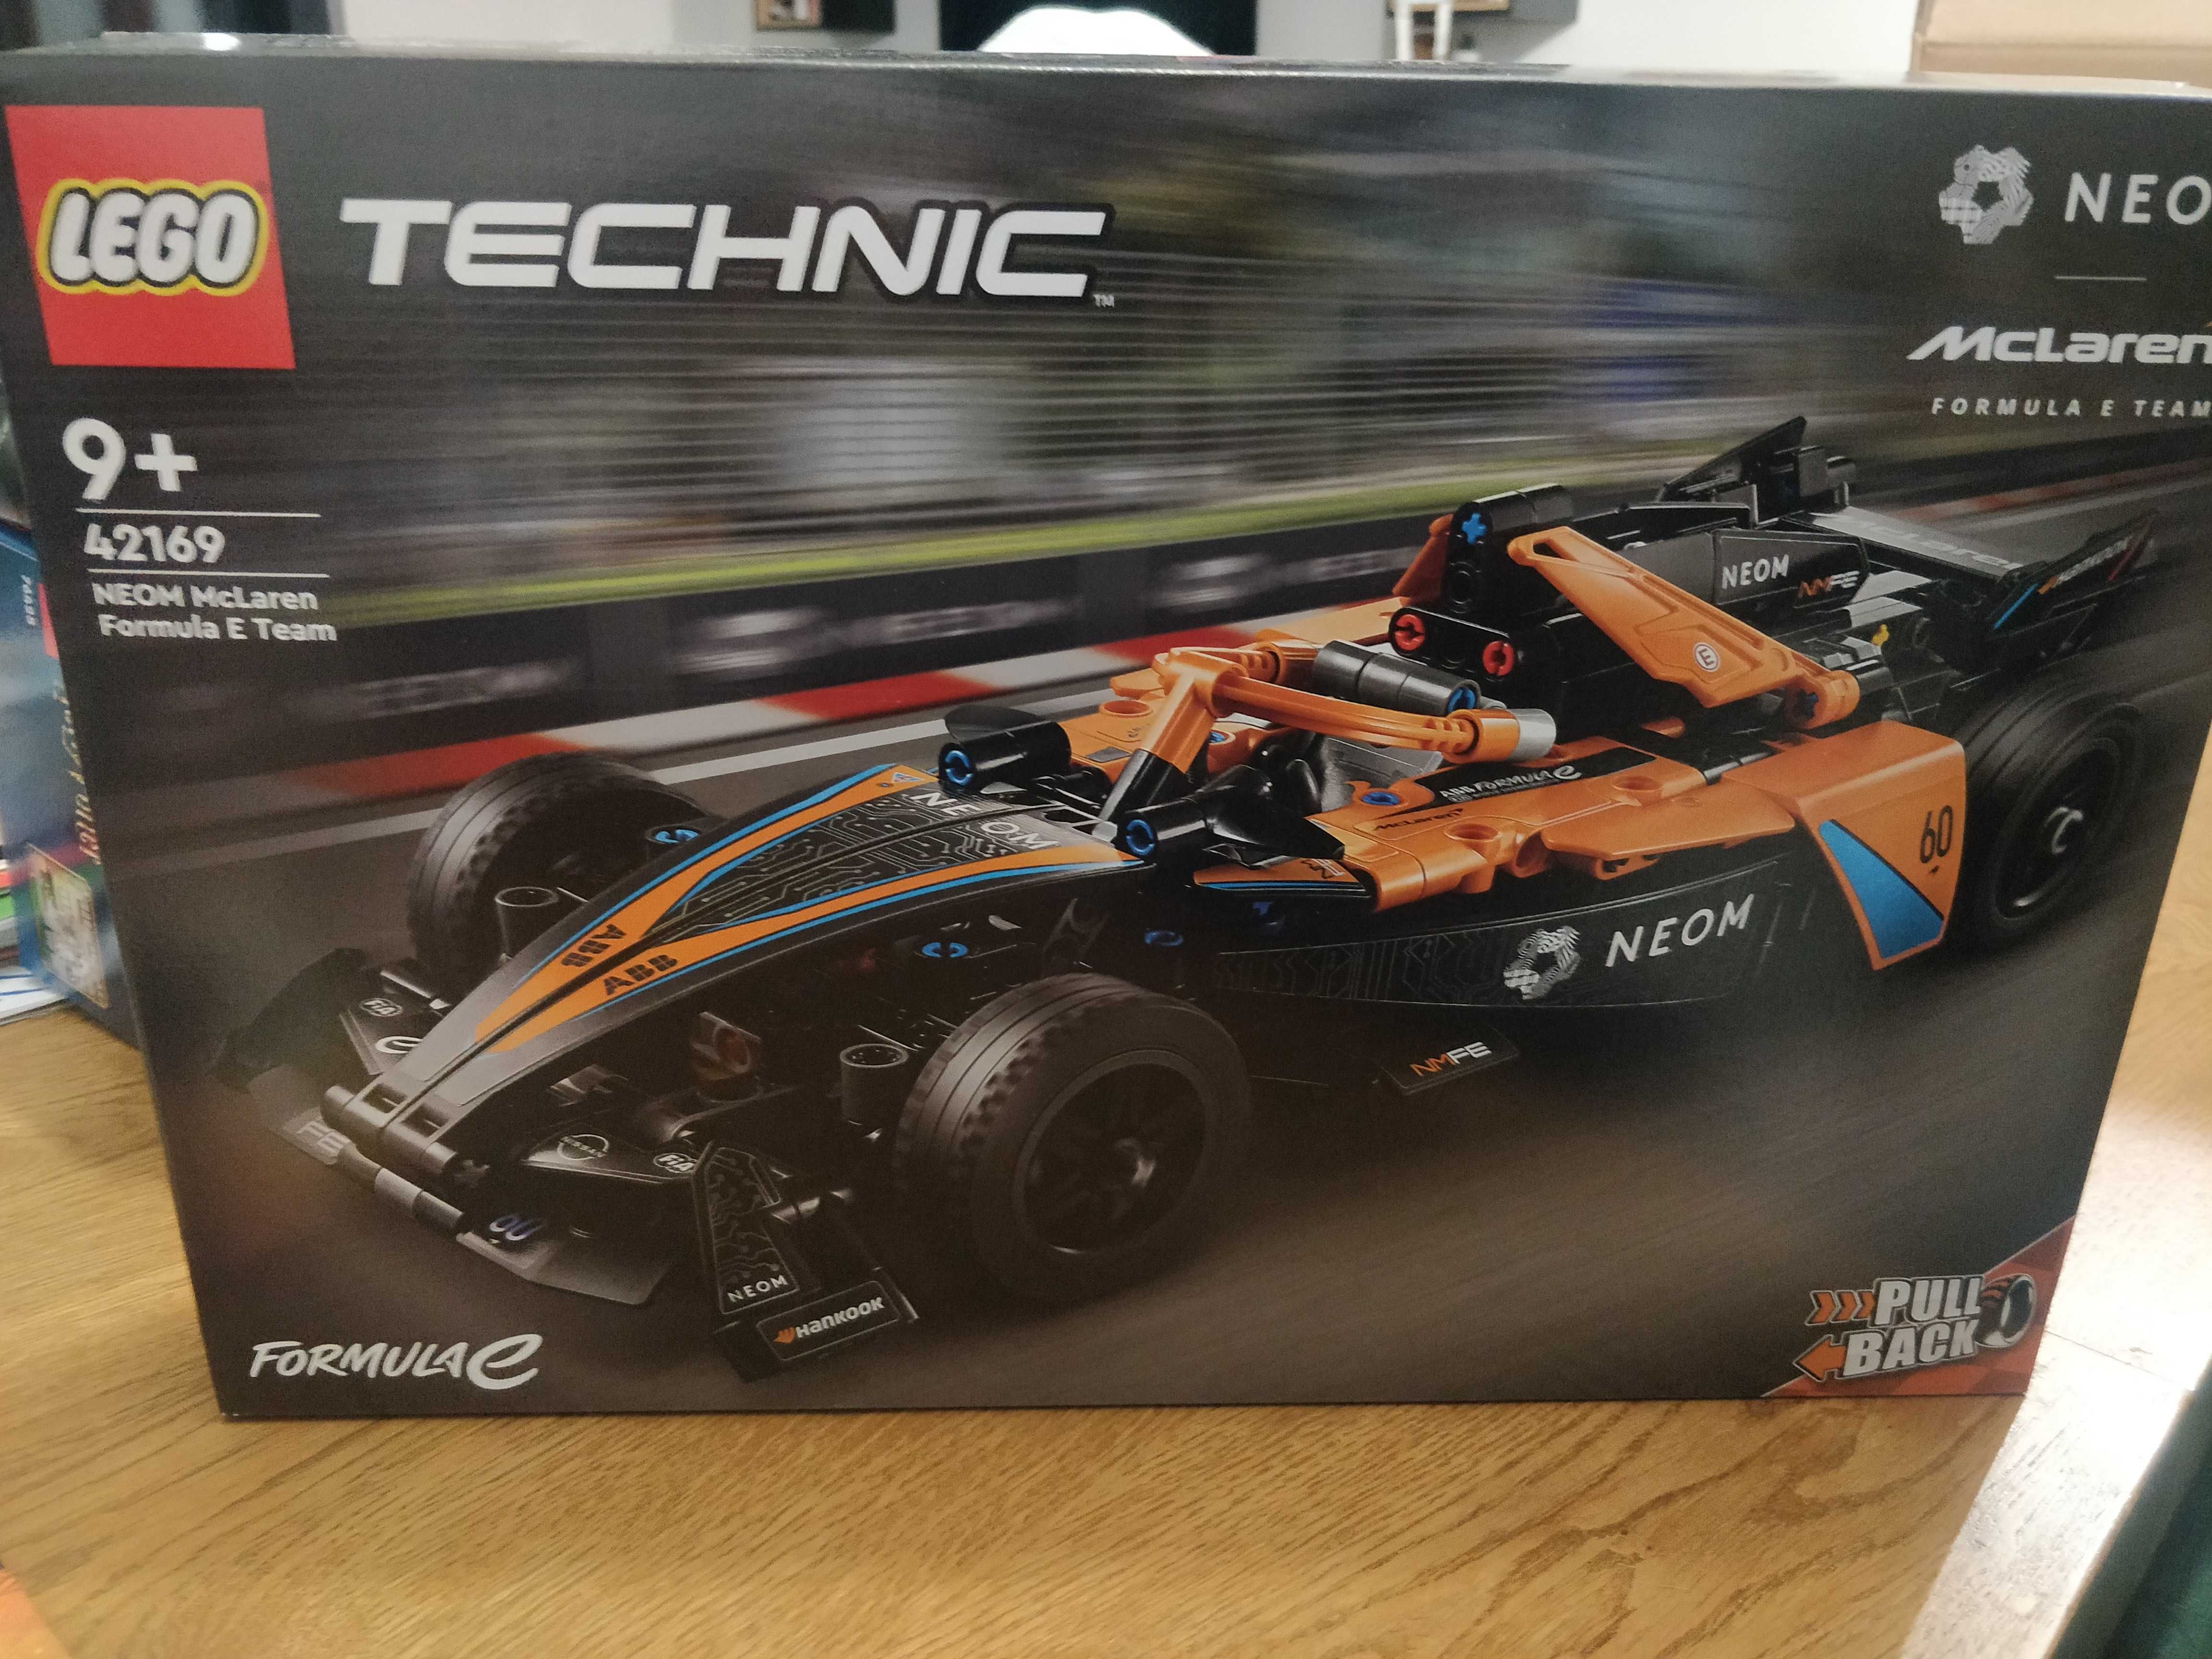 Lego Technic 42169 Neom McLaren Formula E